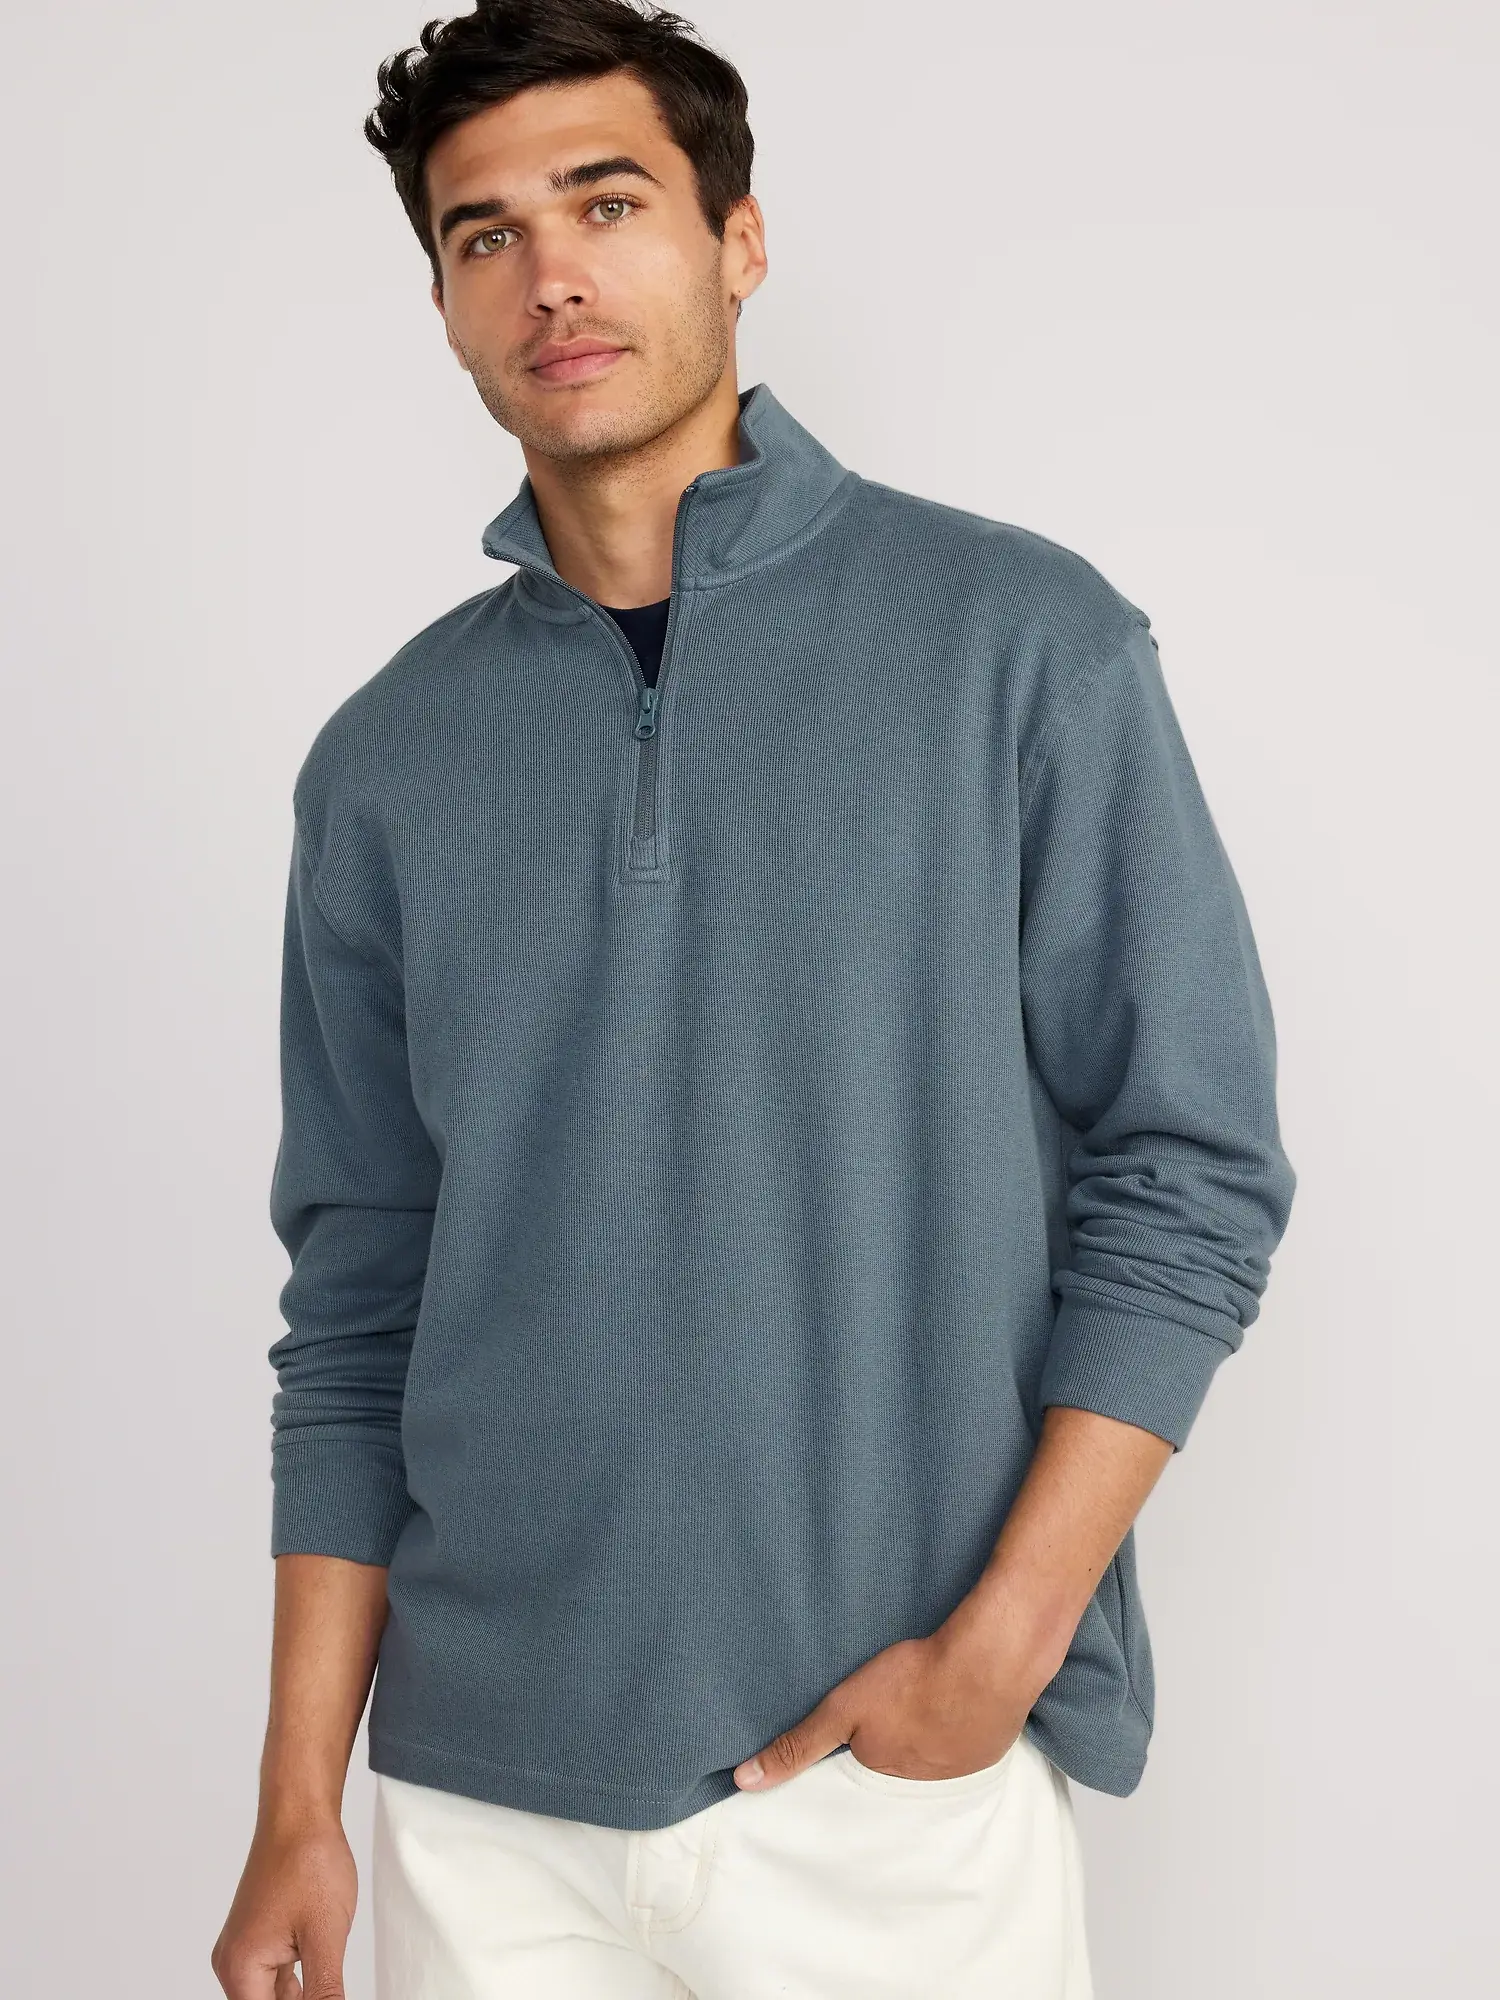 Men's 1/4 Zip Pullover Sweater - Navy